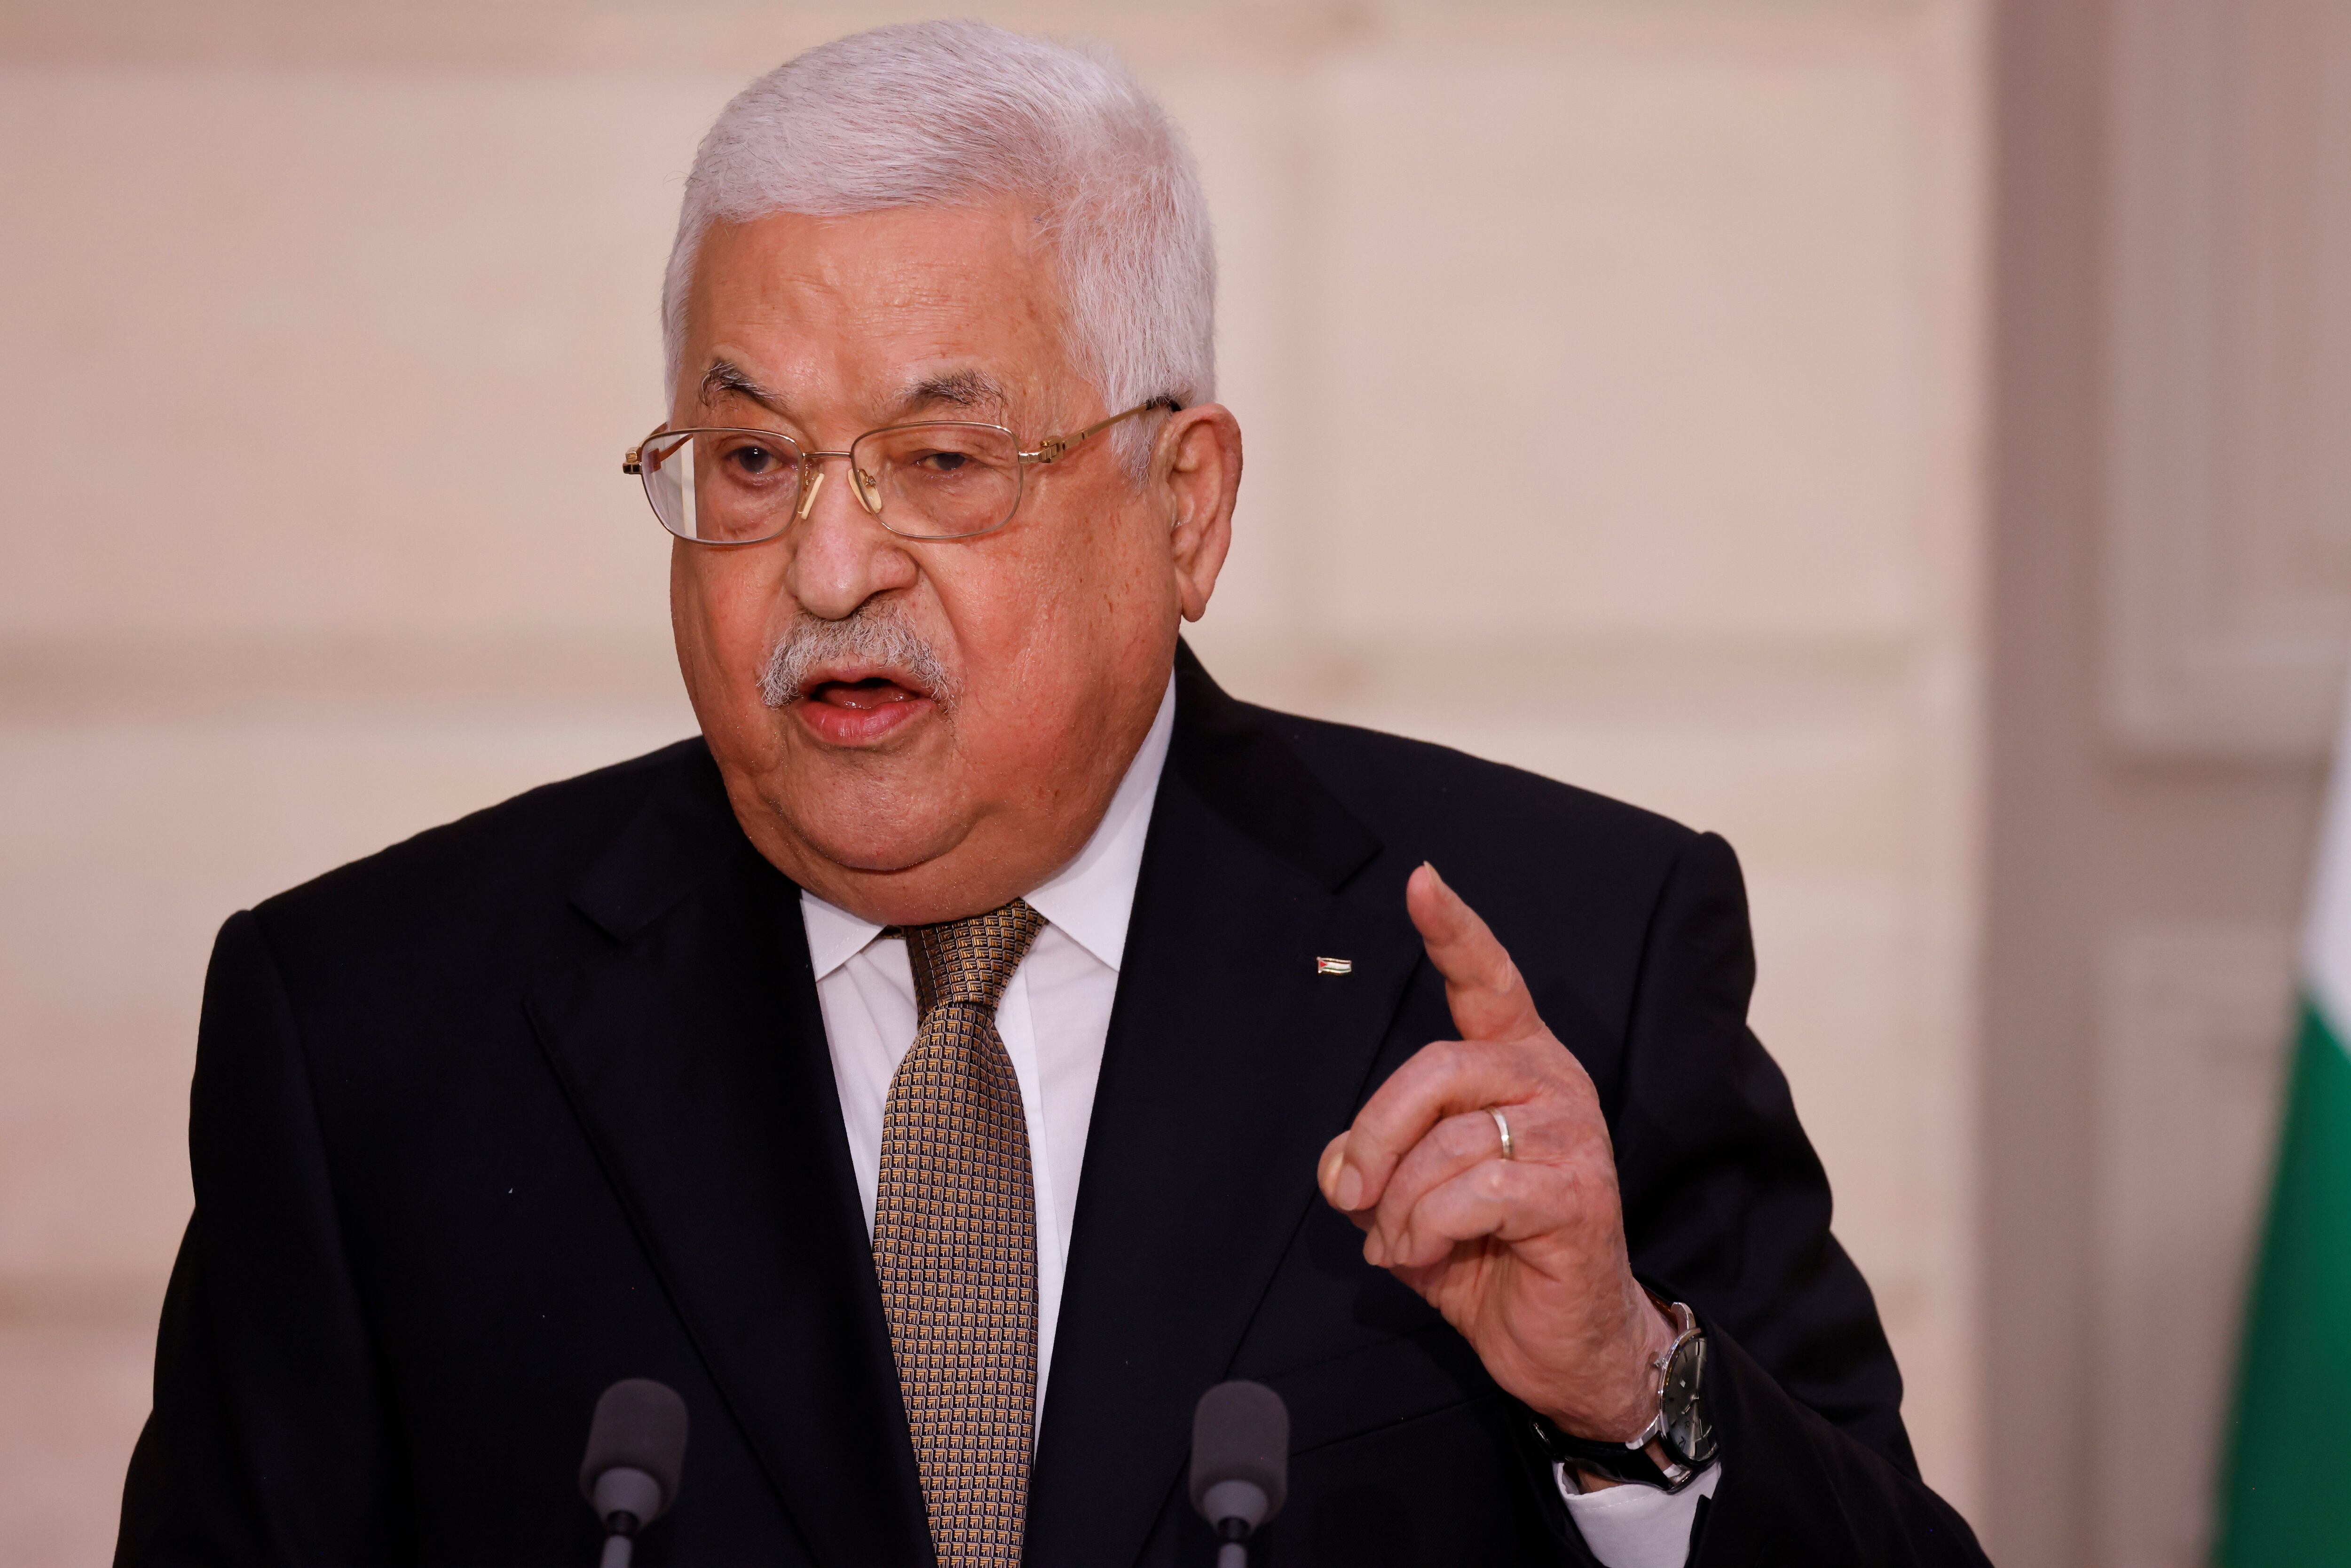 El presidente palestino celebró el anuncio hecho por el presidente Gustavo Petro - crédito Ludovic Marin/EFE
